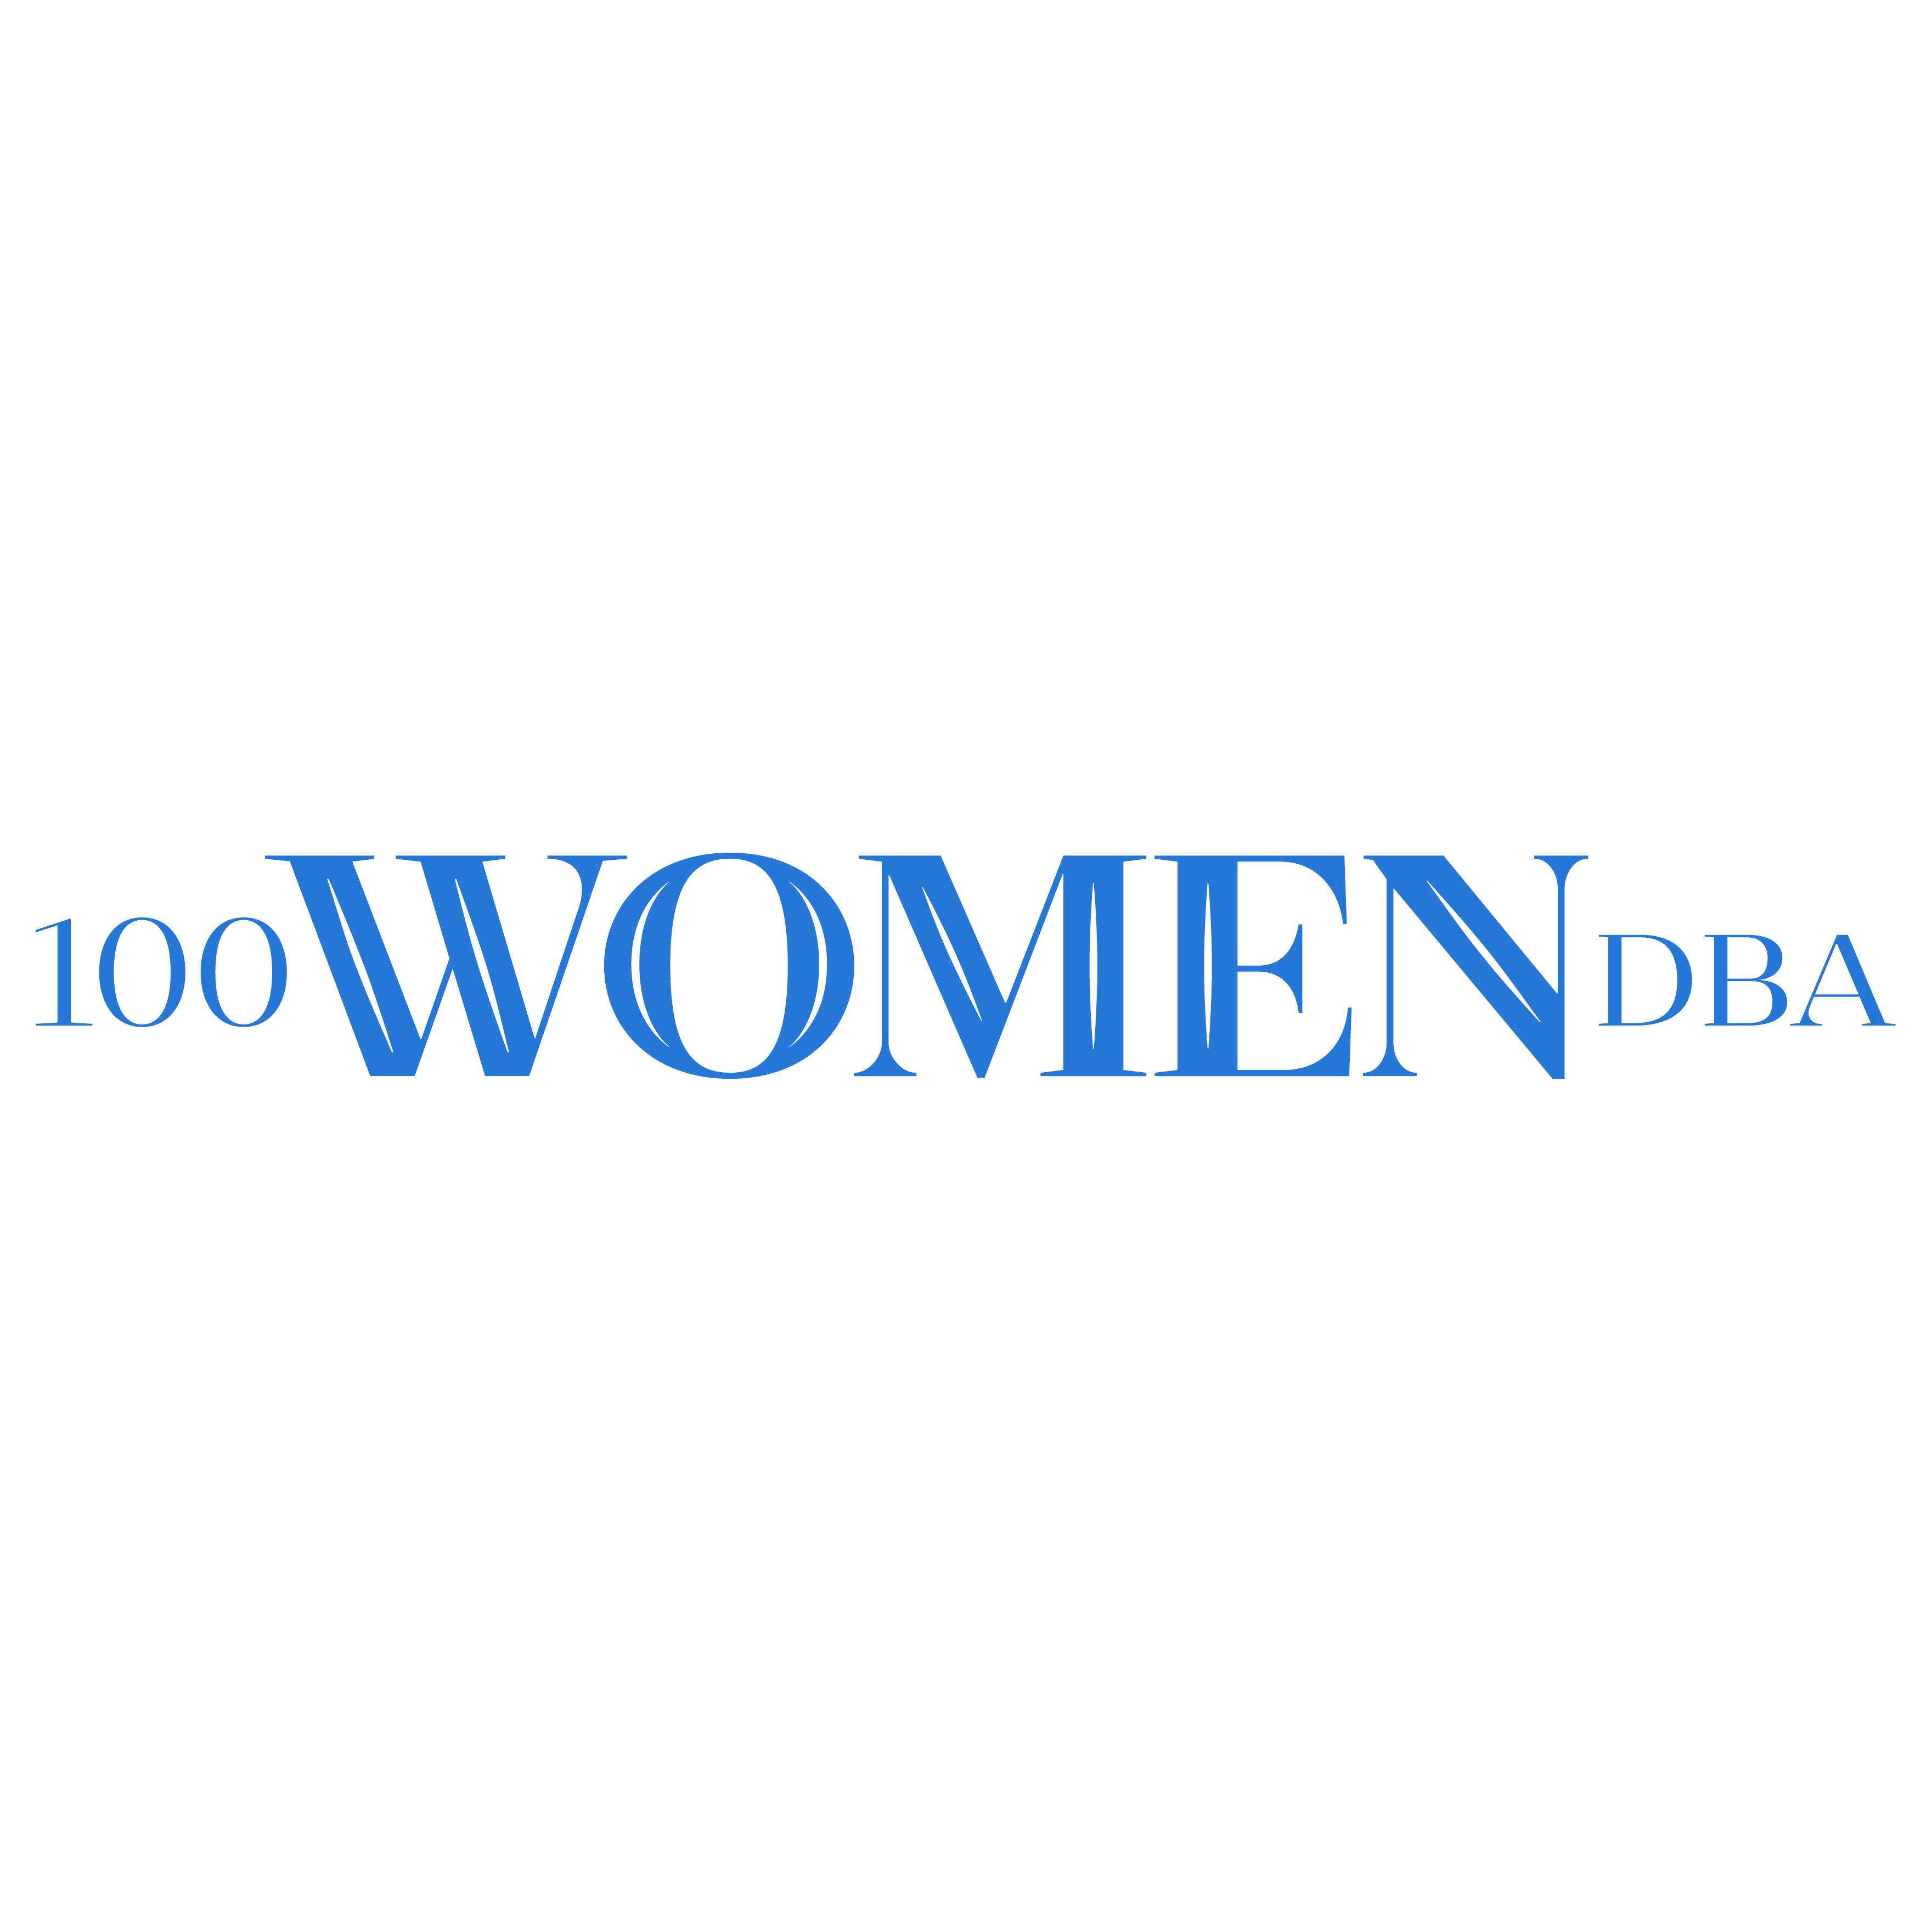 100 WOMEN DBA - ABOUT